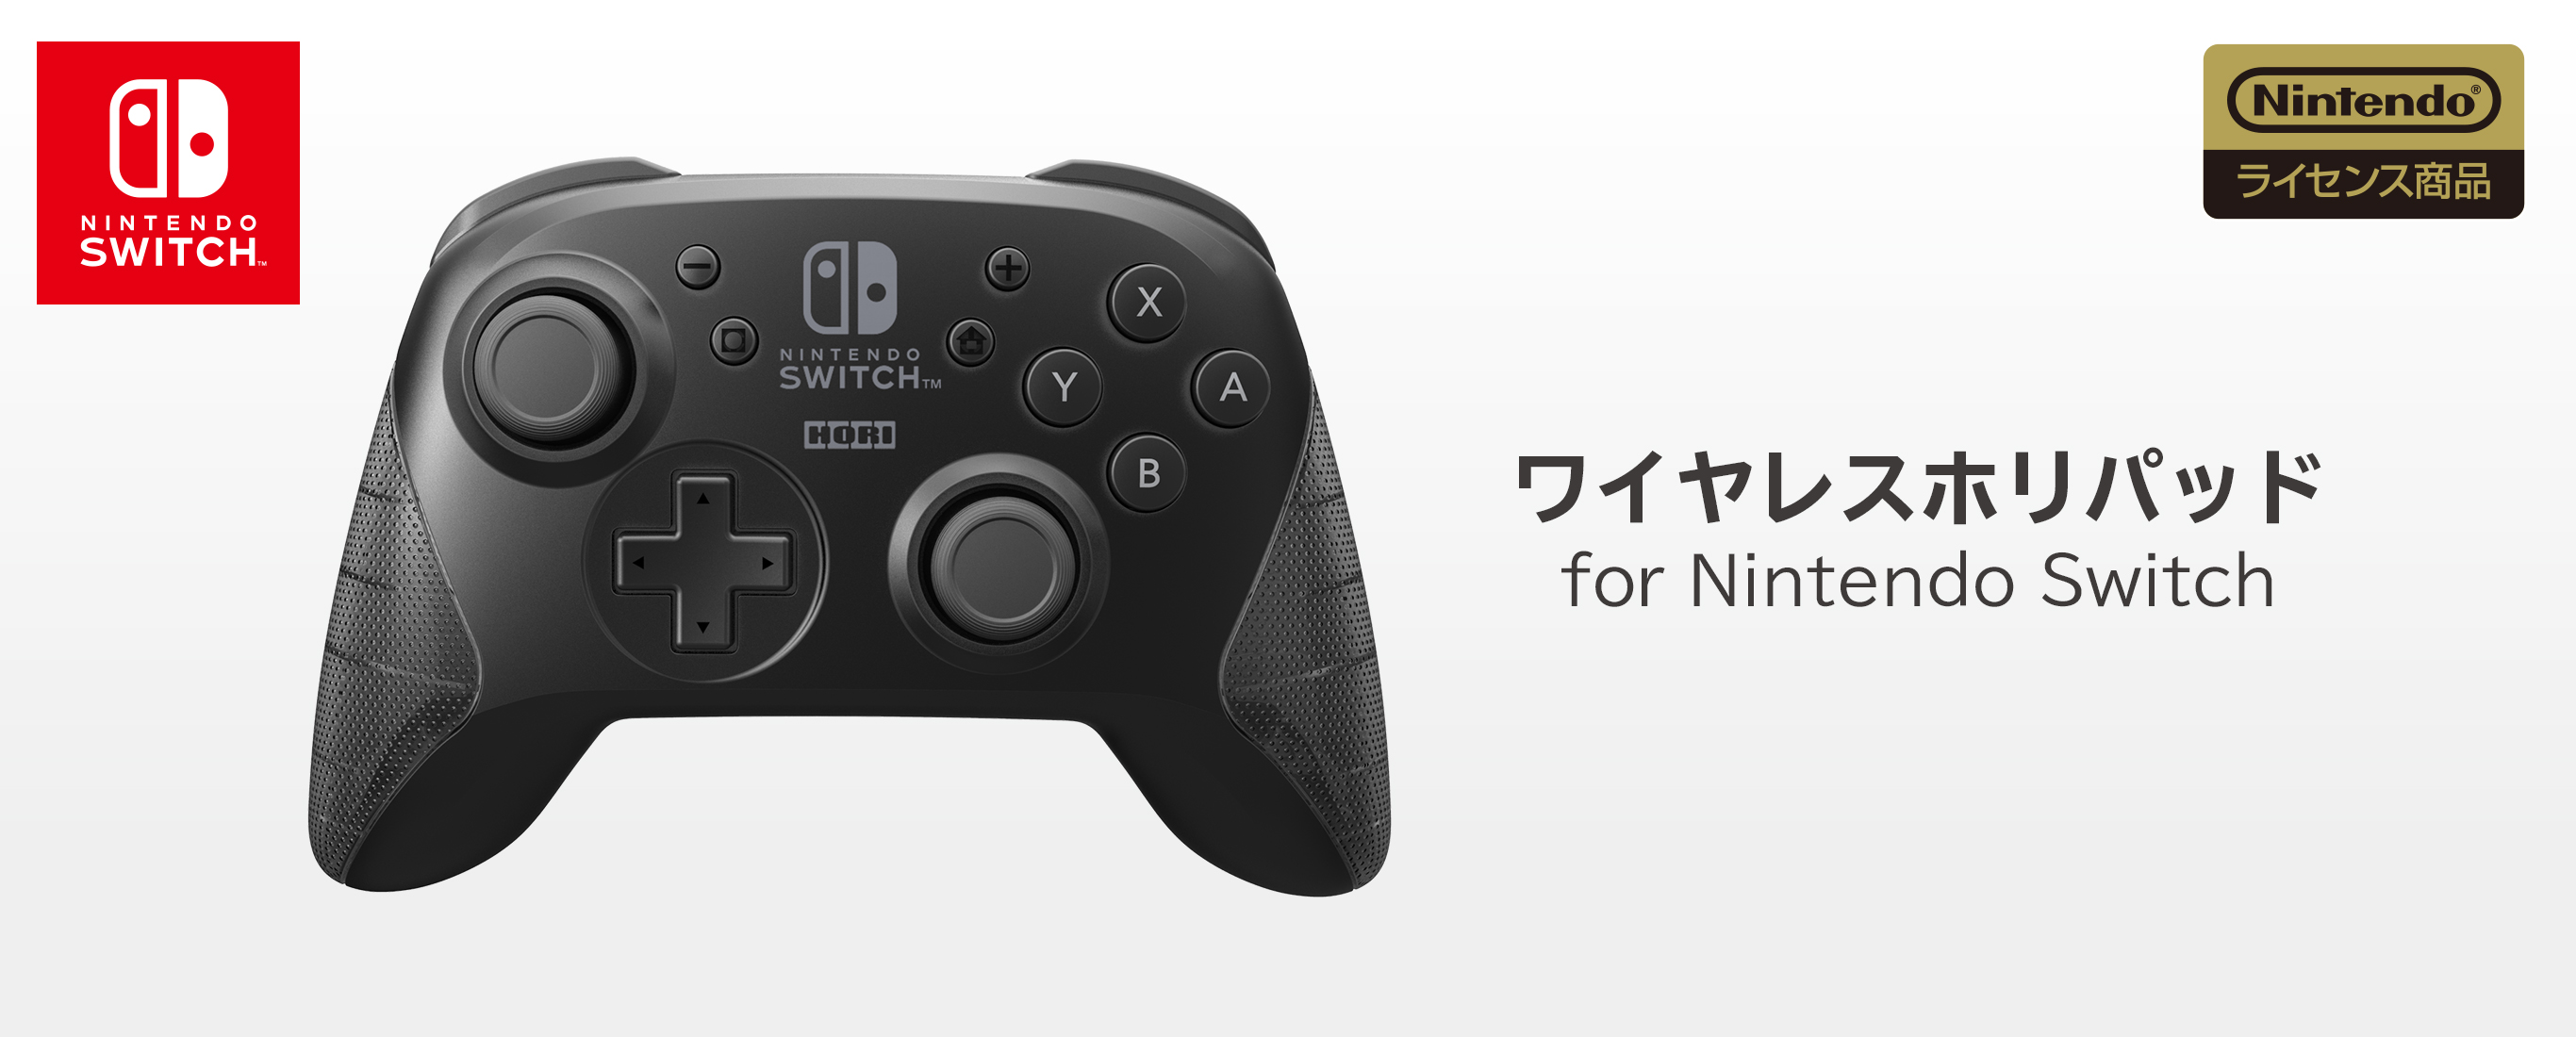 株式会社 Hori ワイヤレスホリパッド For Nintendo Switch